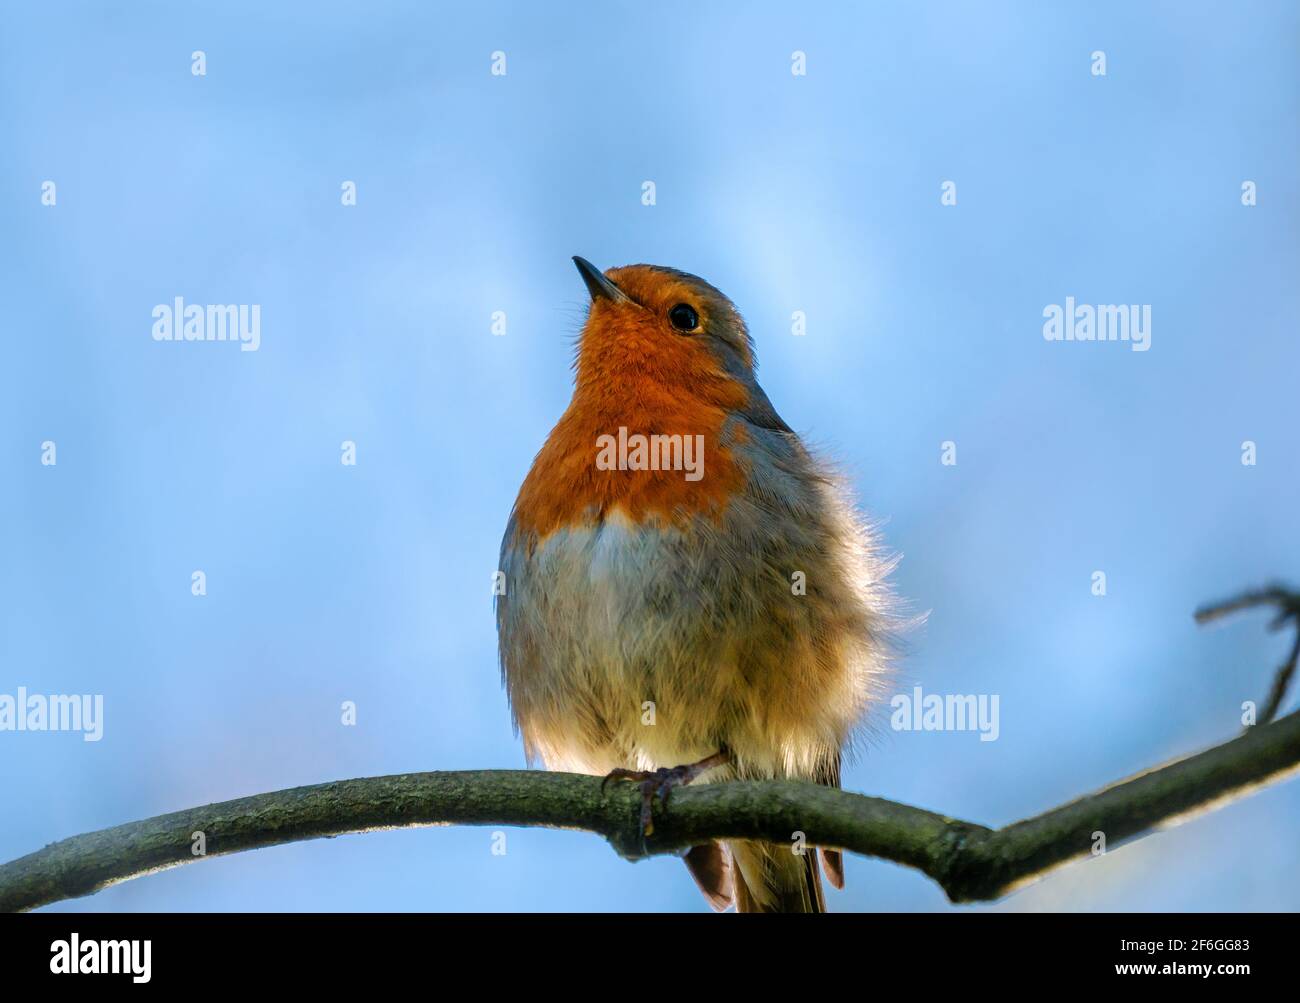 Magnifique Robin songbird rouge sur une branche d'arbre dans le saison de printemps Banque D'Images